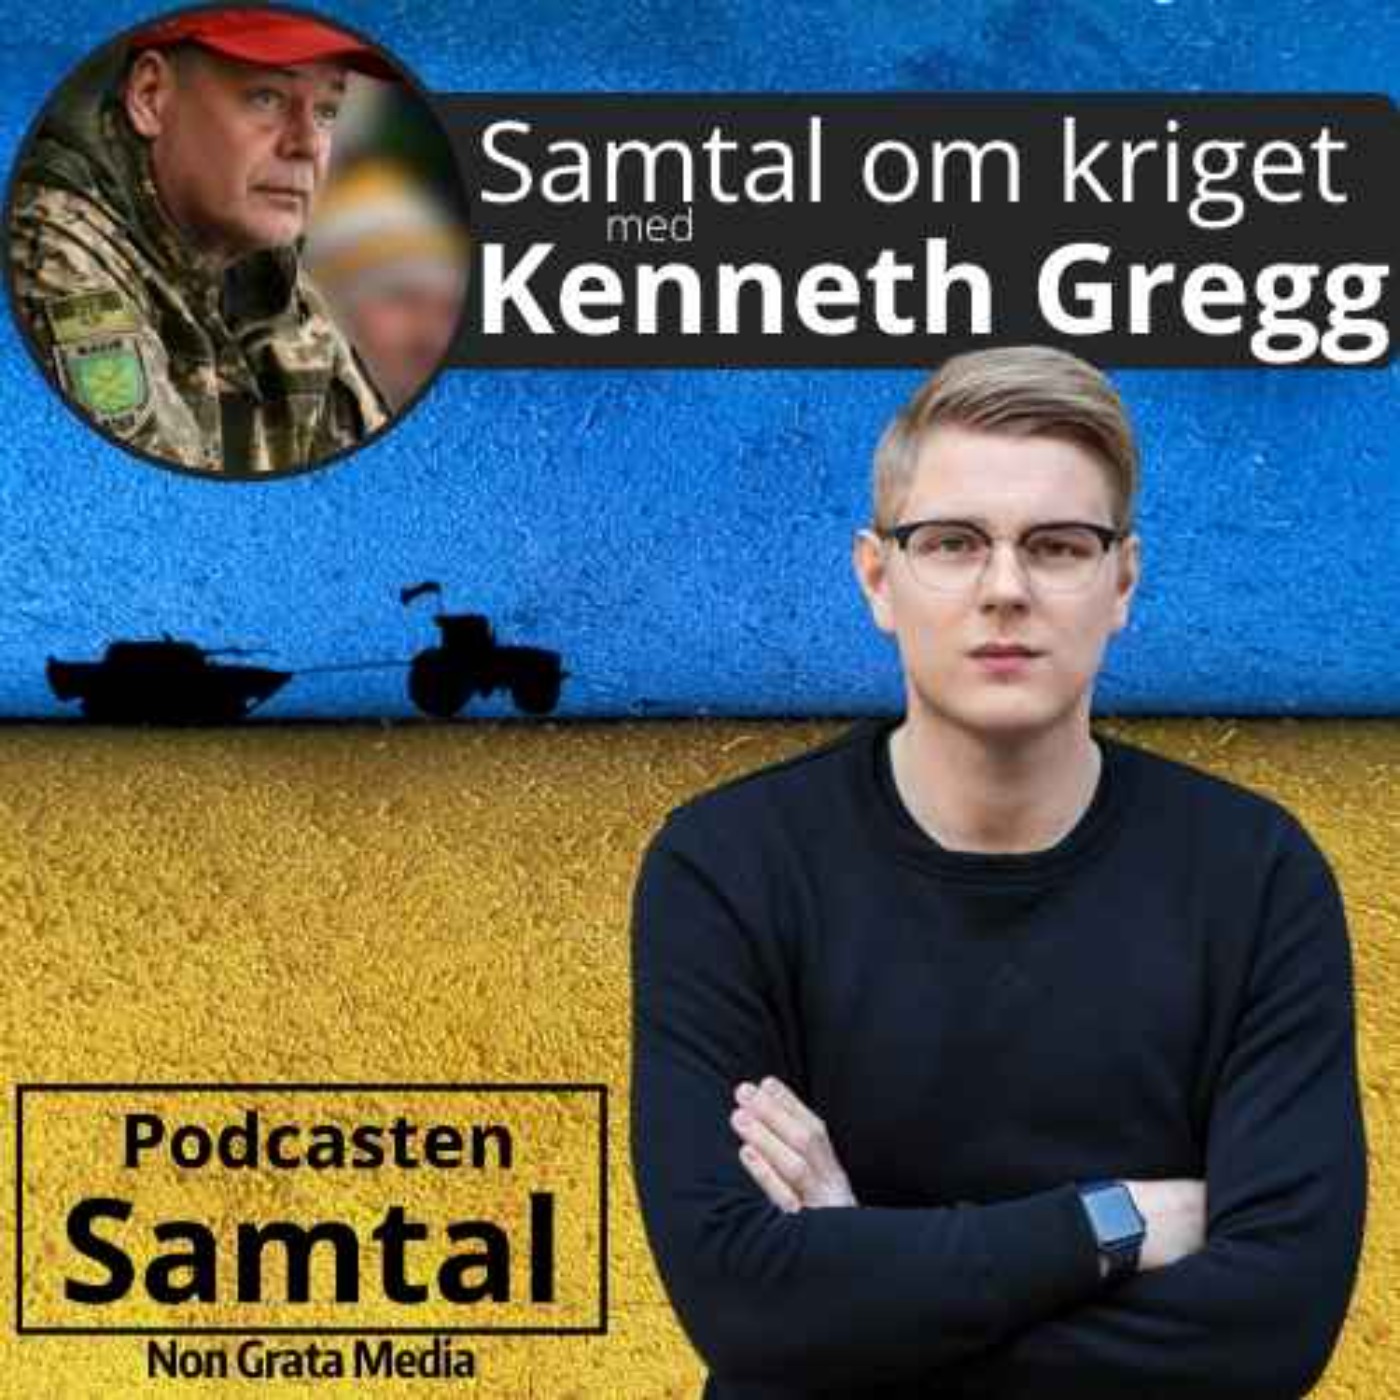 Samtal om kriget, med Kenneth Gregg (vecka 24)